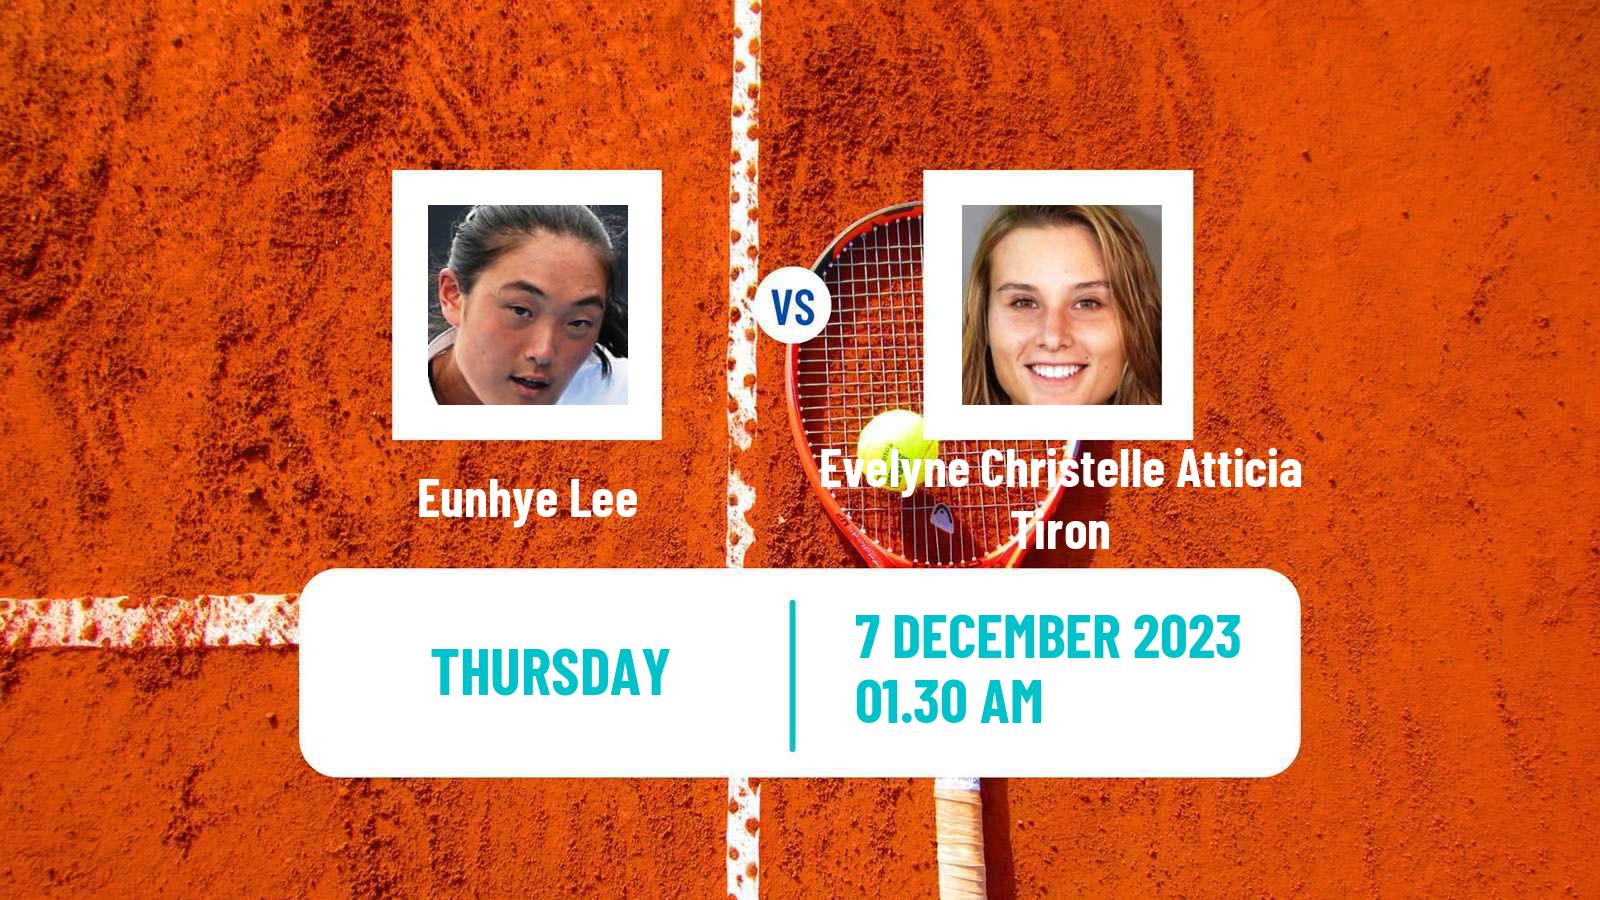 Tennis ITF W15 Antalya 21 Women Eunhye Lee - Evelyne Christelle Atticia Tiron